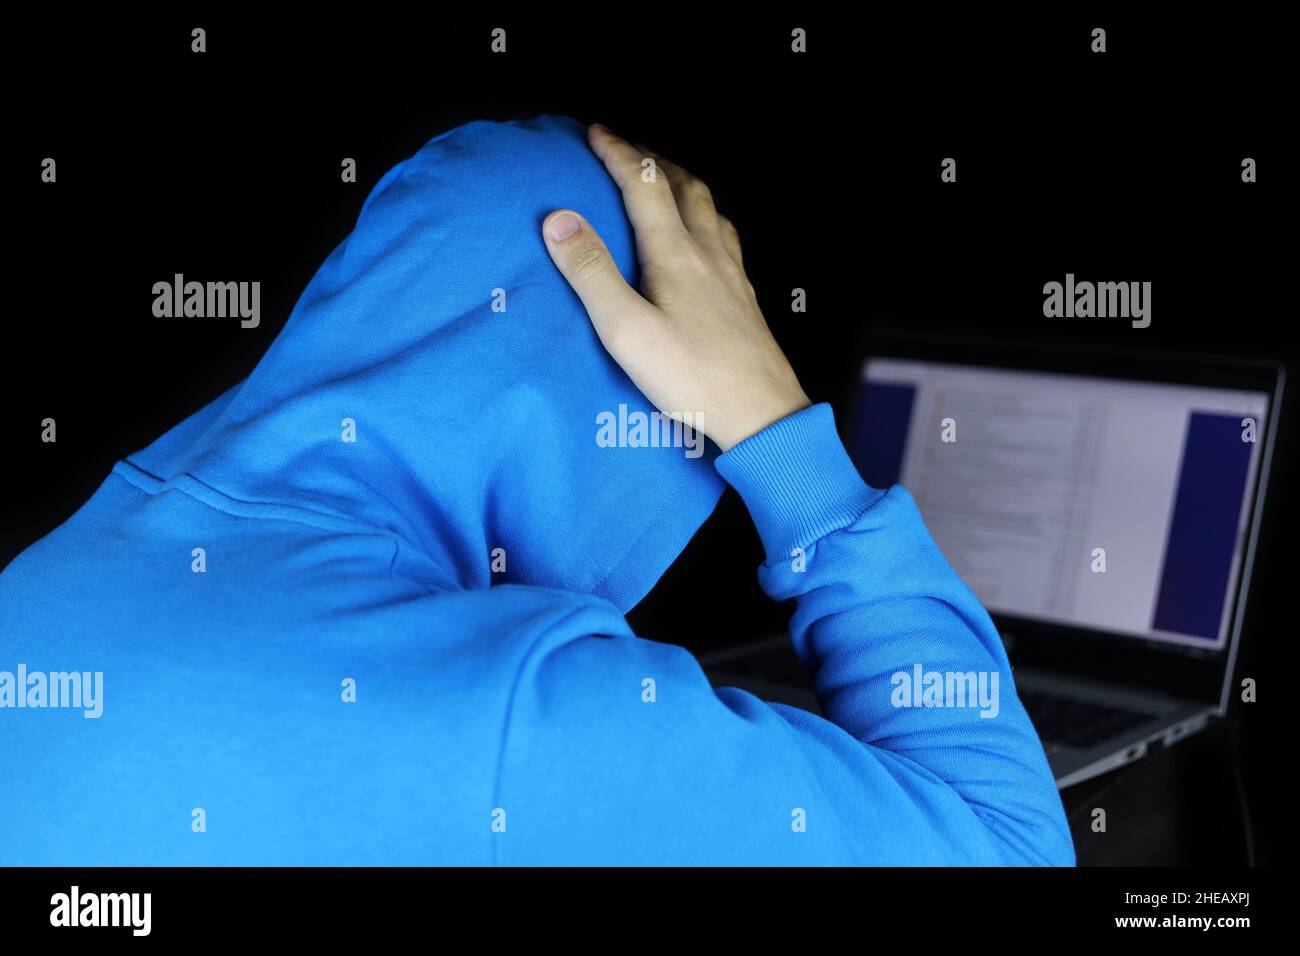 Uomo con cappuccio blu seduto con un computer portatile che gli aggrappa la testa. Concetto di cybercriminalità, hacking, compito difficile o errore fatale Foto Stock